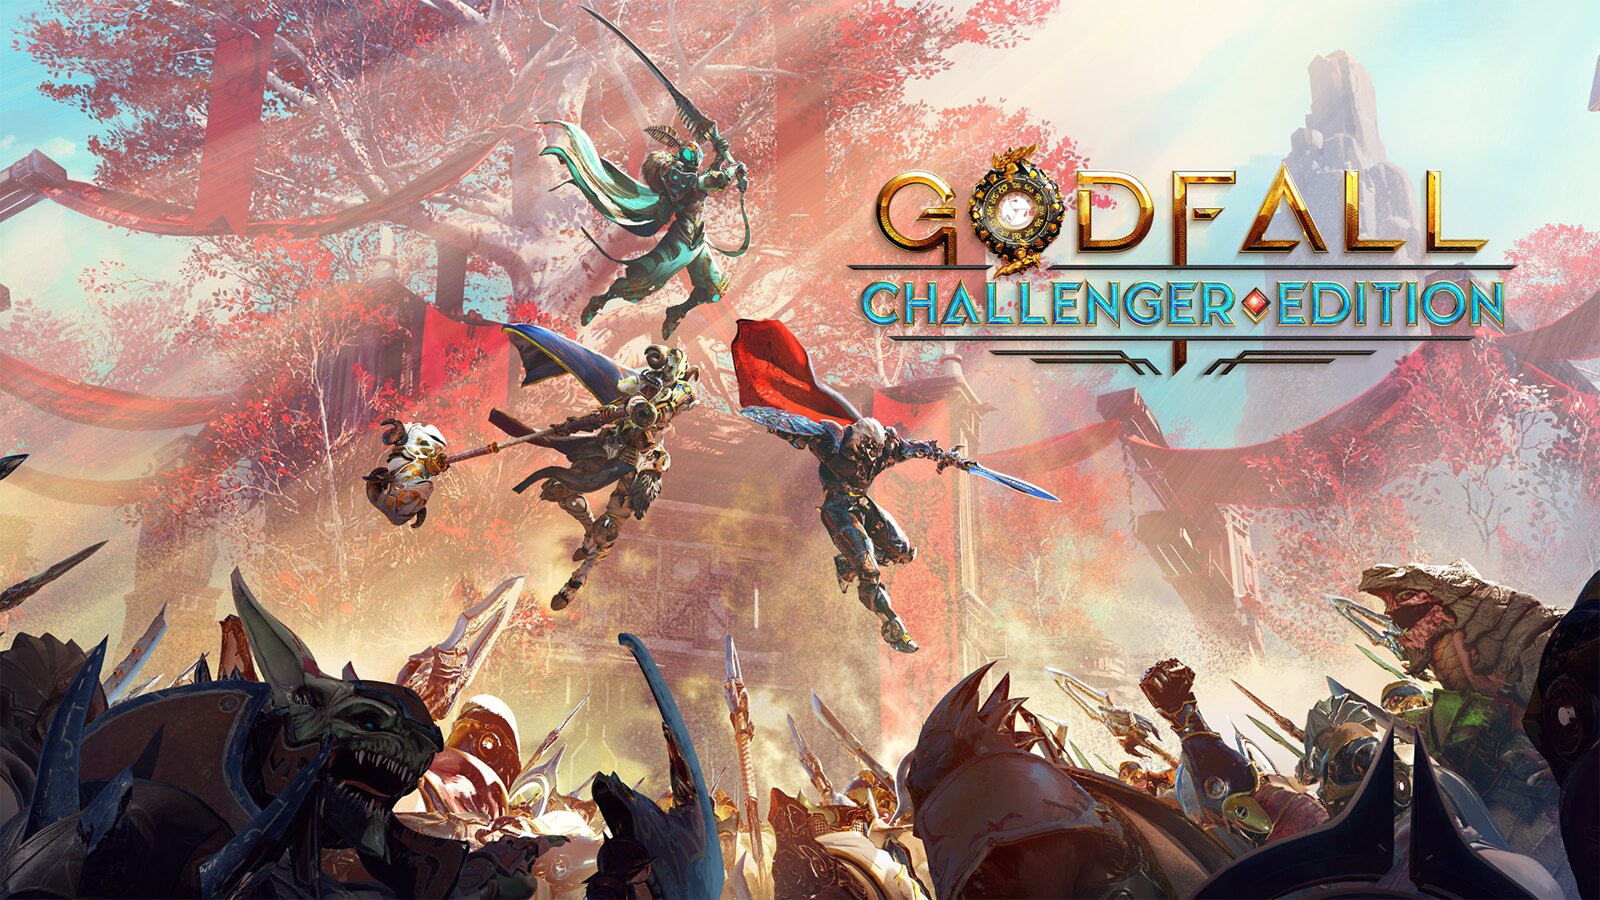 La versión de Godfall incluida en PS Plus diciembre 2021 es la challenger edition incompleta y no estará completa, no tendrá la campaña